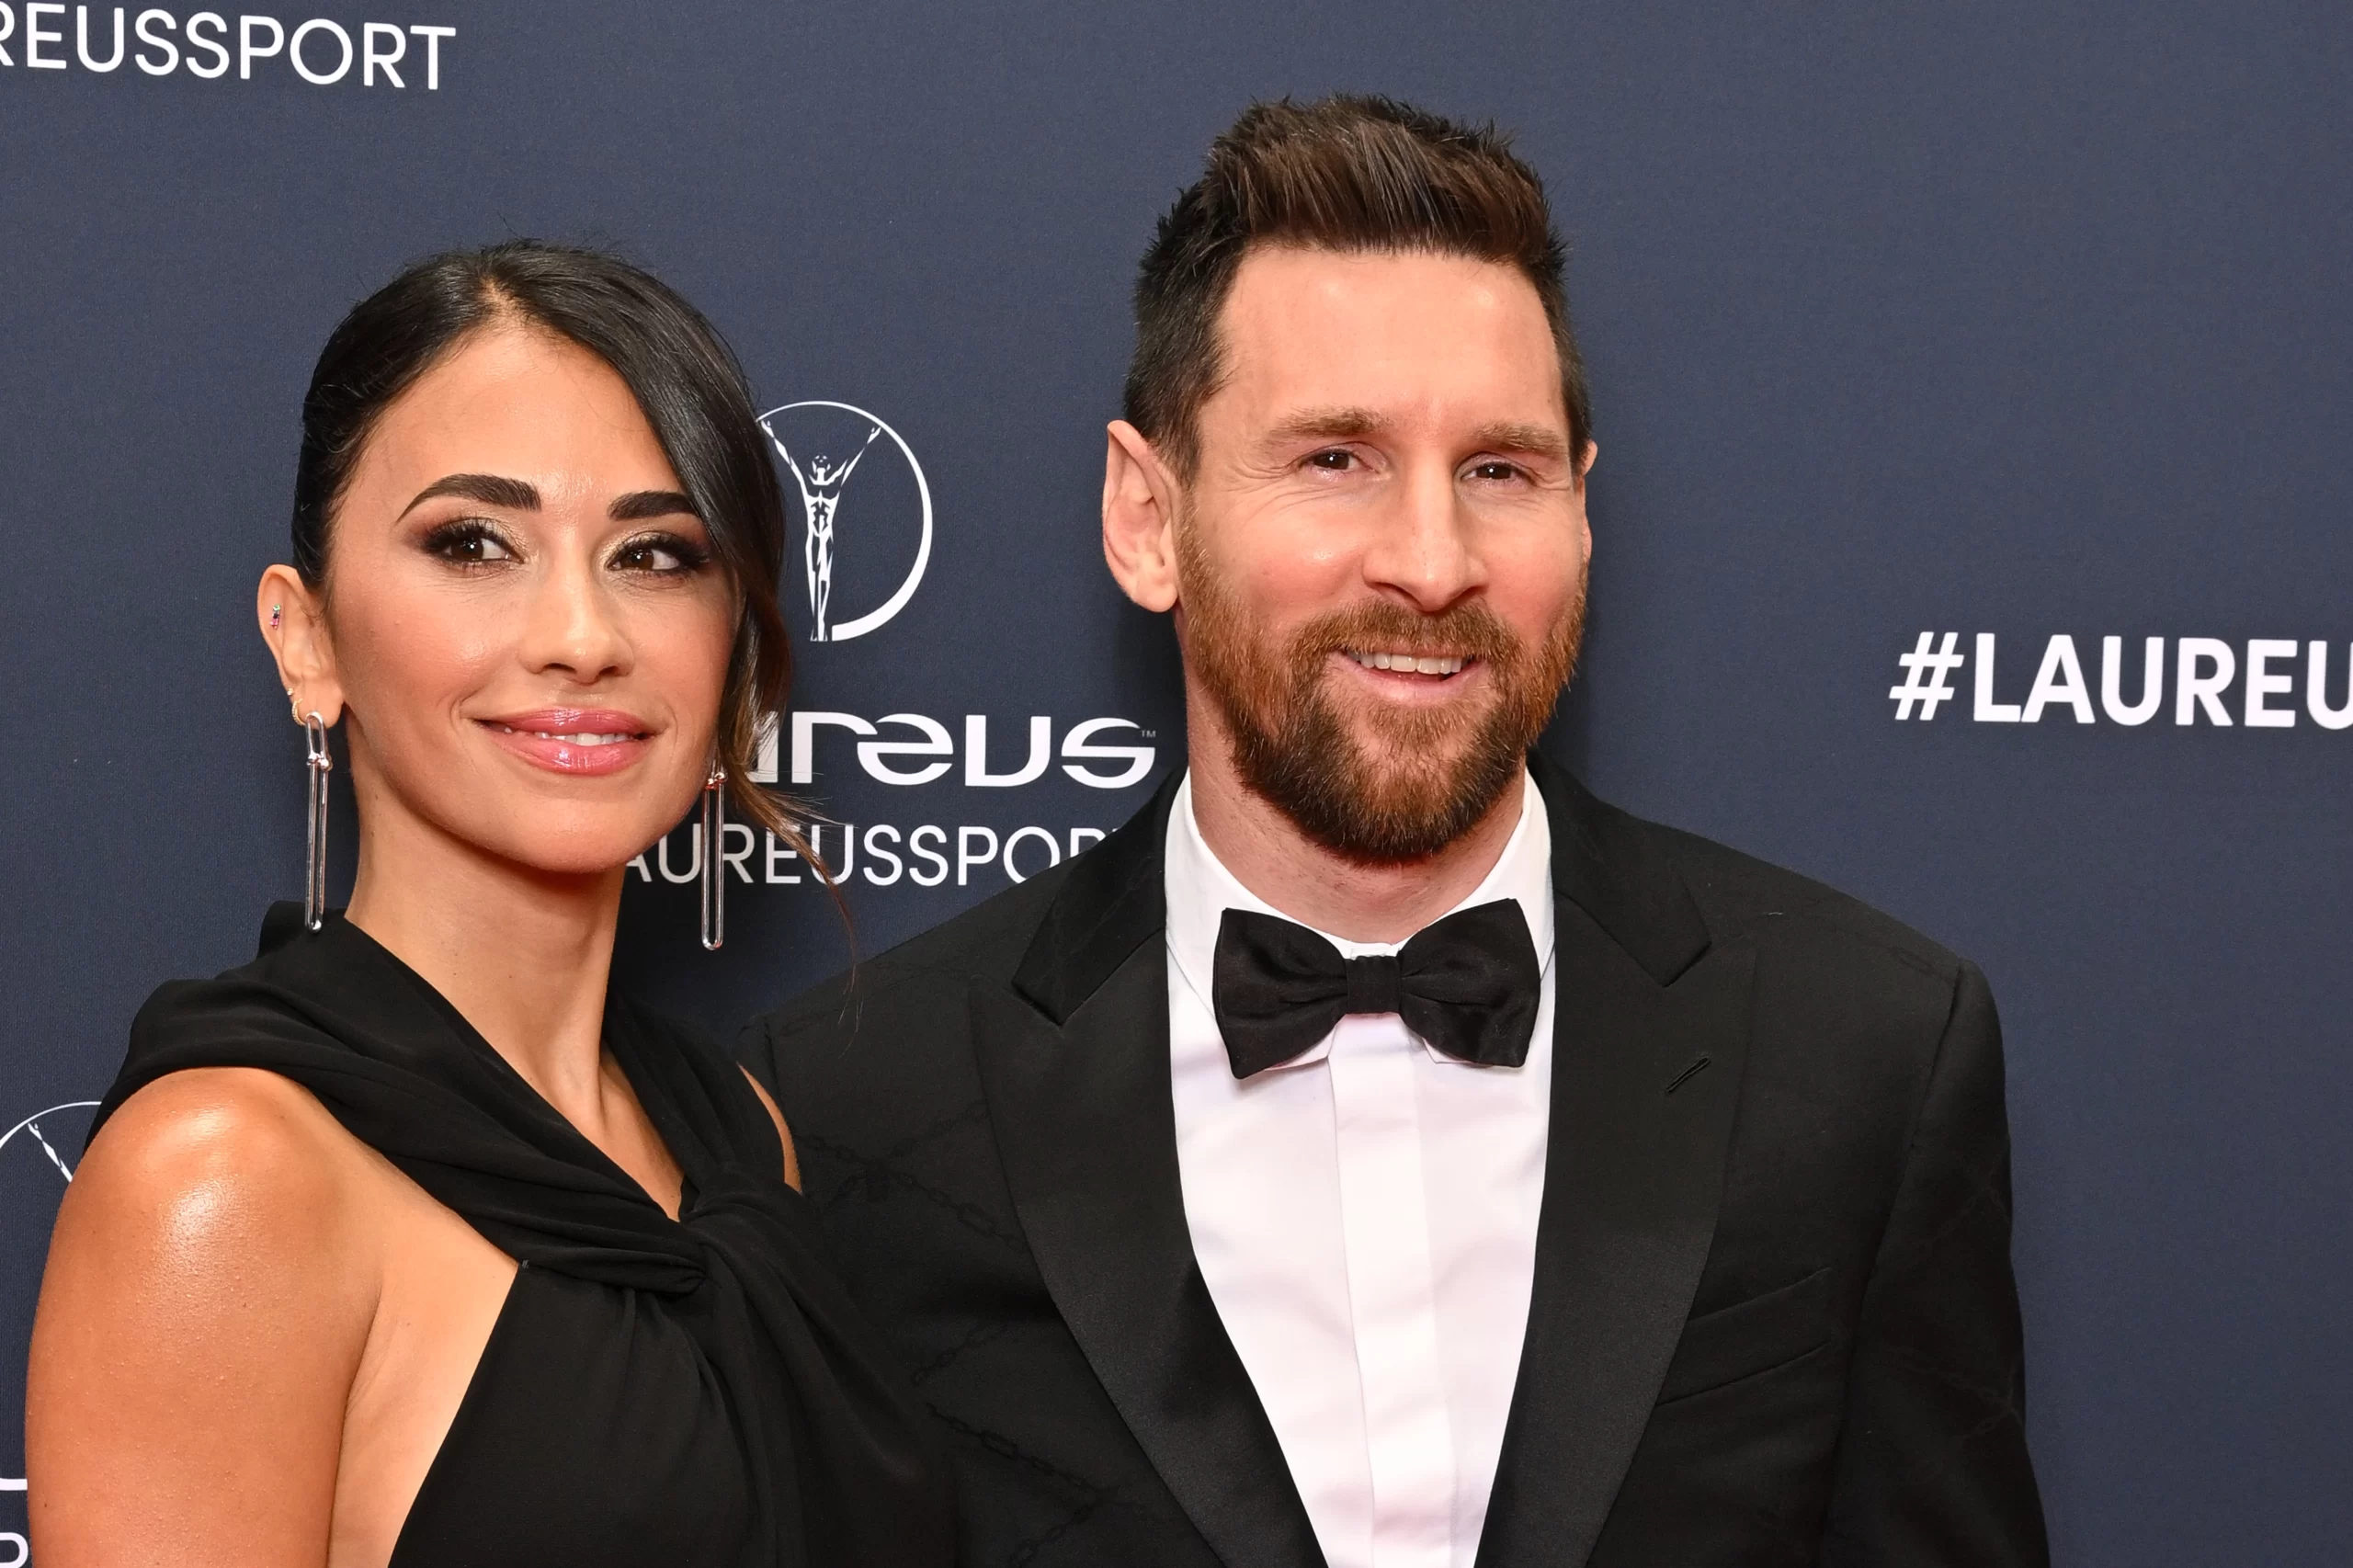 Vợ Messi làm nghề gì? Thông tin về Antonella Roccuzzo, bà xã El Pulga - Vé Bóng Đá Online